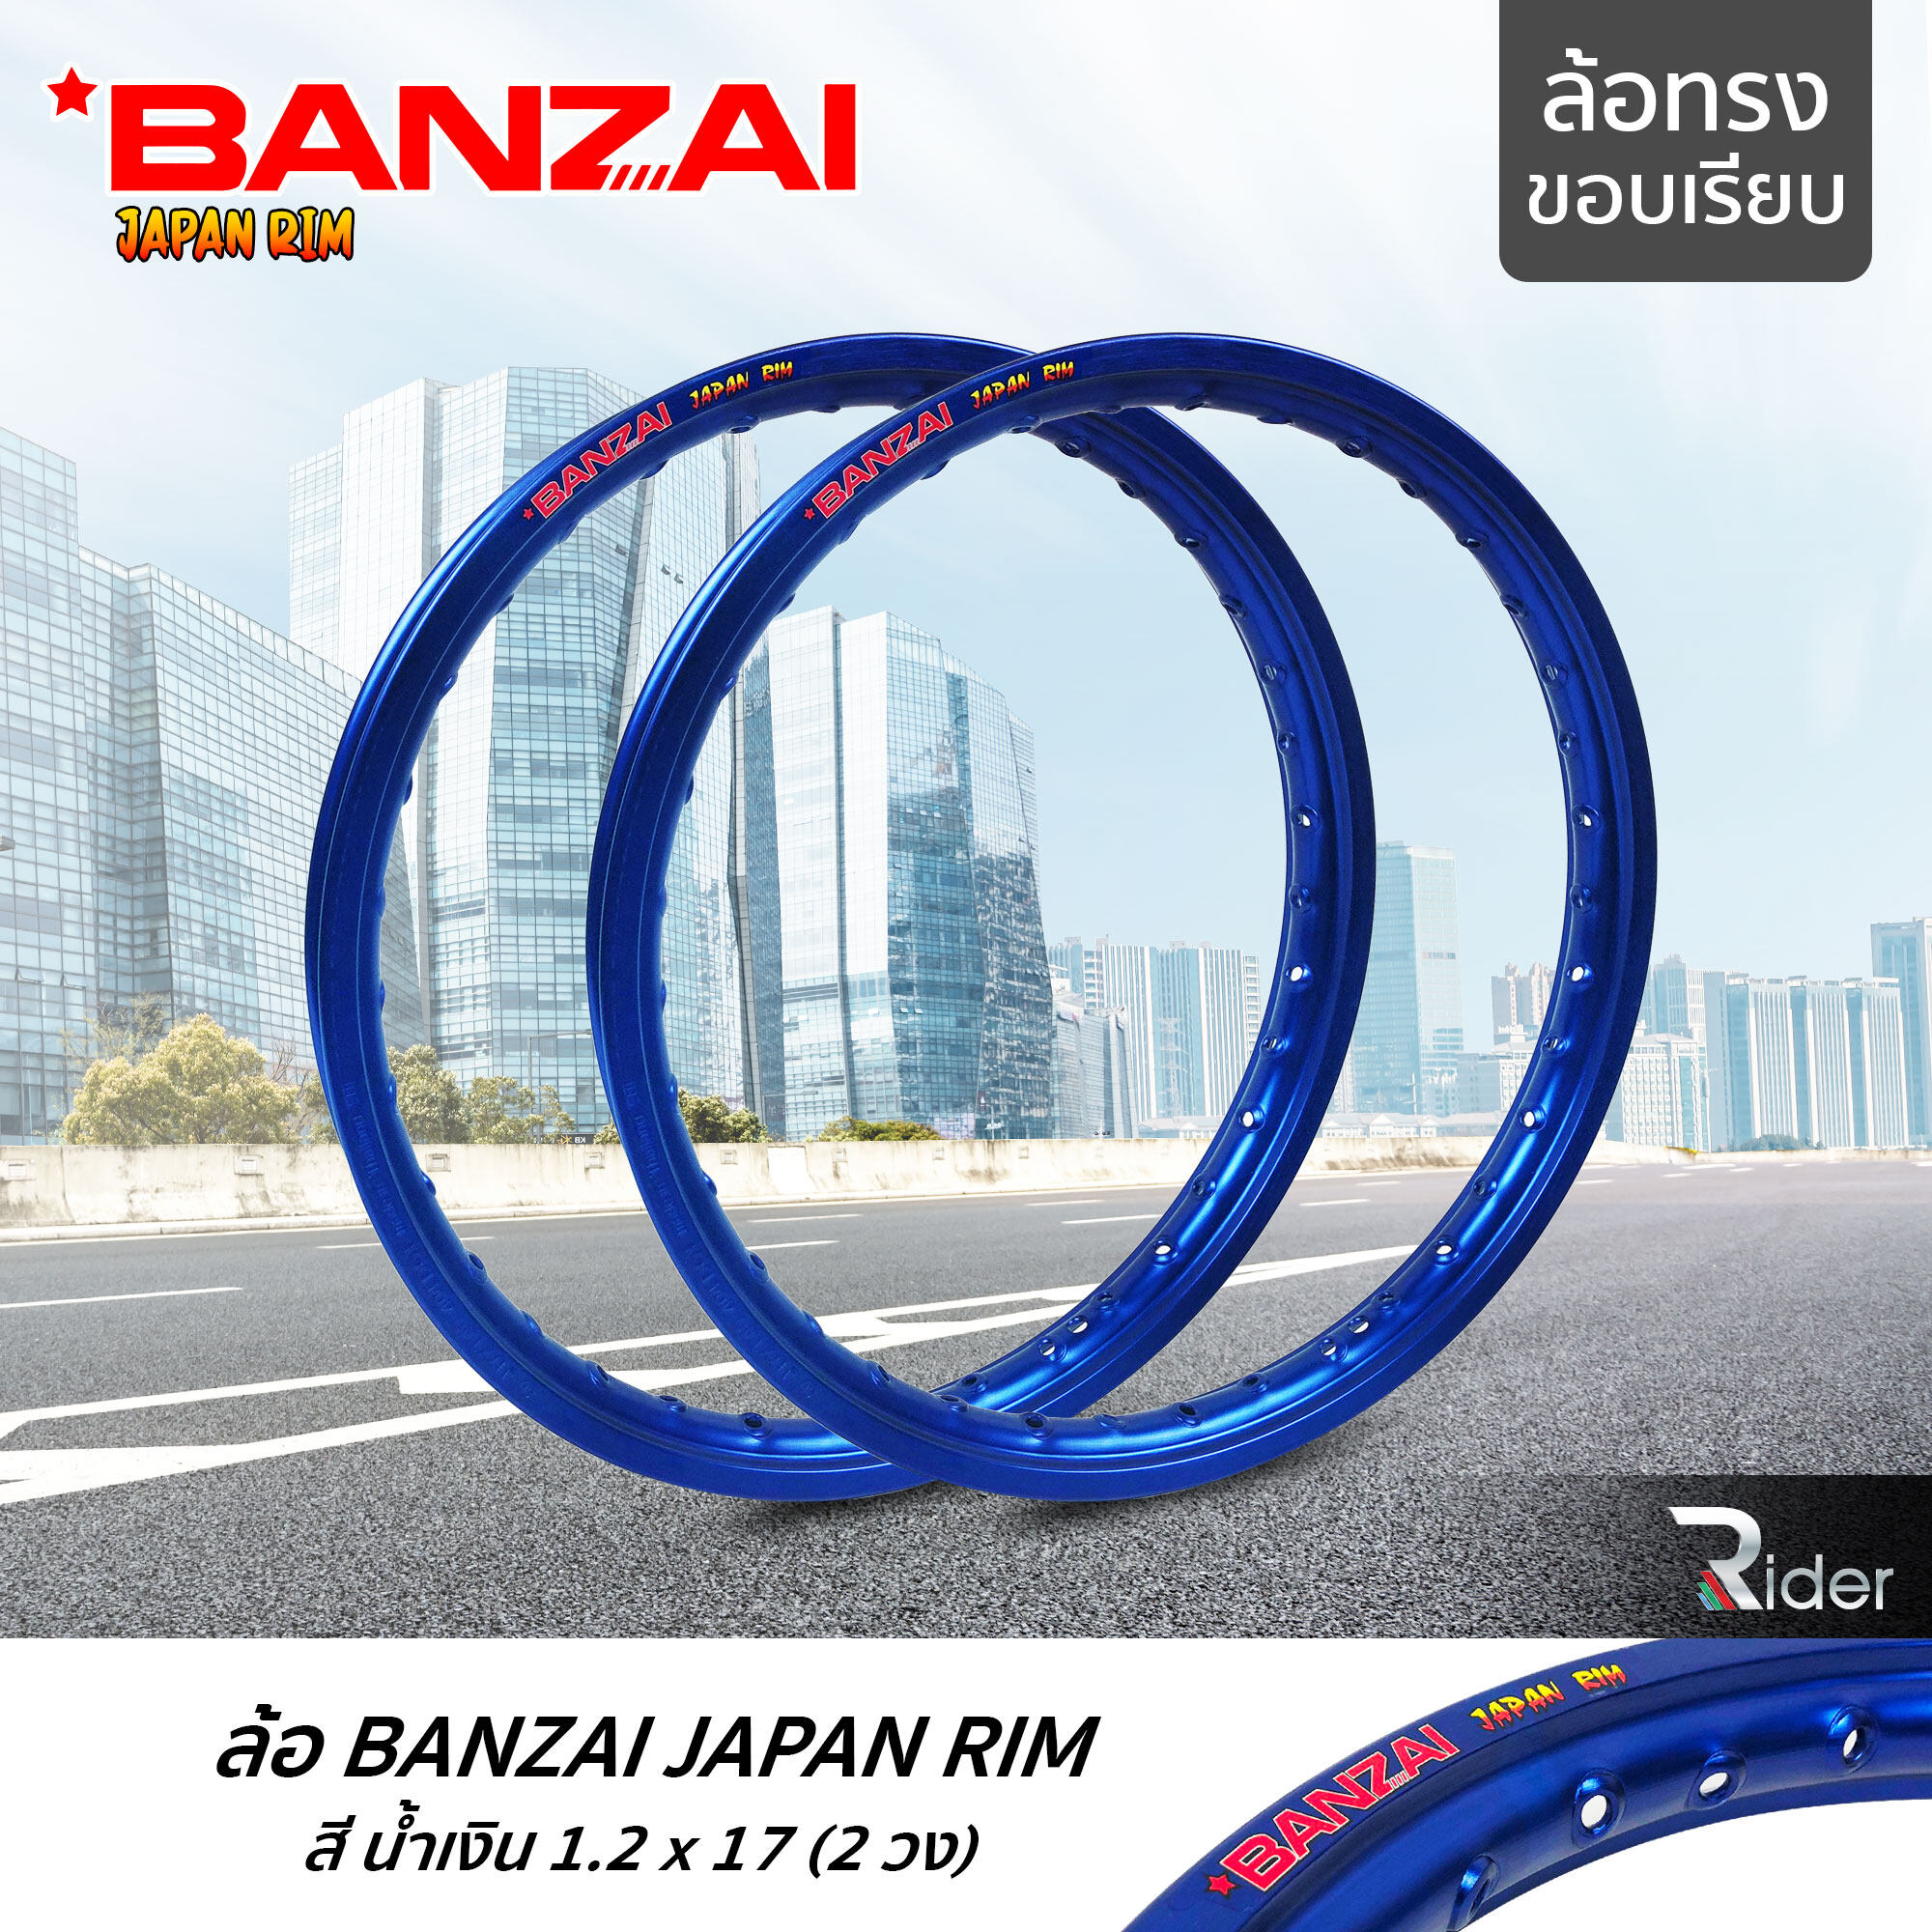 BANZAI ล้อขอบ 17 บันไซ รุ่น JAPAN RIM 1.2 ขอบ17 นิ้ว ล้อทรงขอบเรียบ แพ็คคู่ 2 วง วัสดุอลูมิเนียม ของแท้ จักรยานยนต์ สี น้ำเงิน